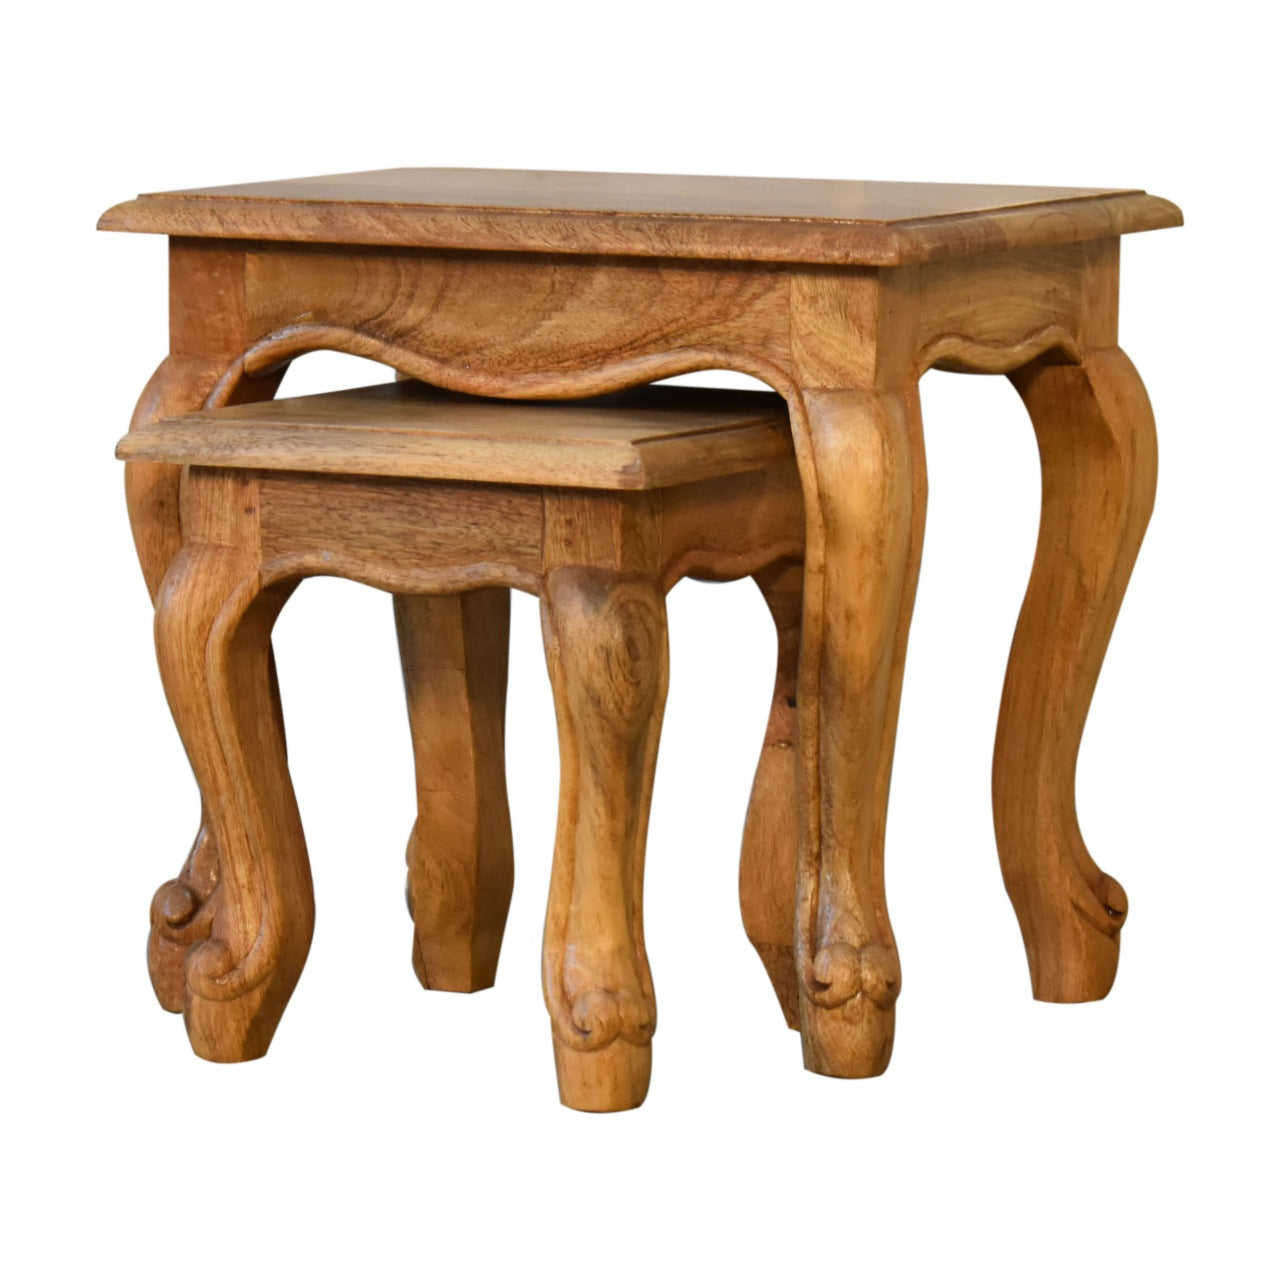 Oak-ish French Style Wooden Stool Set